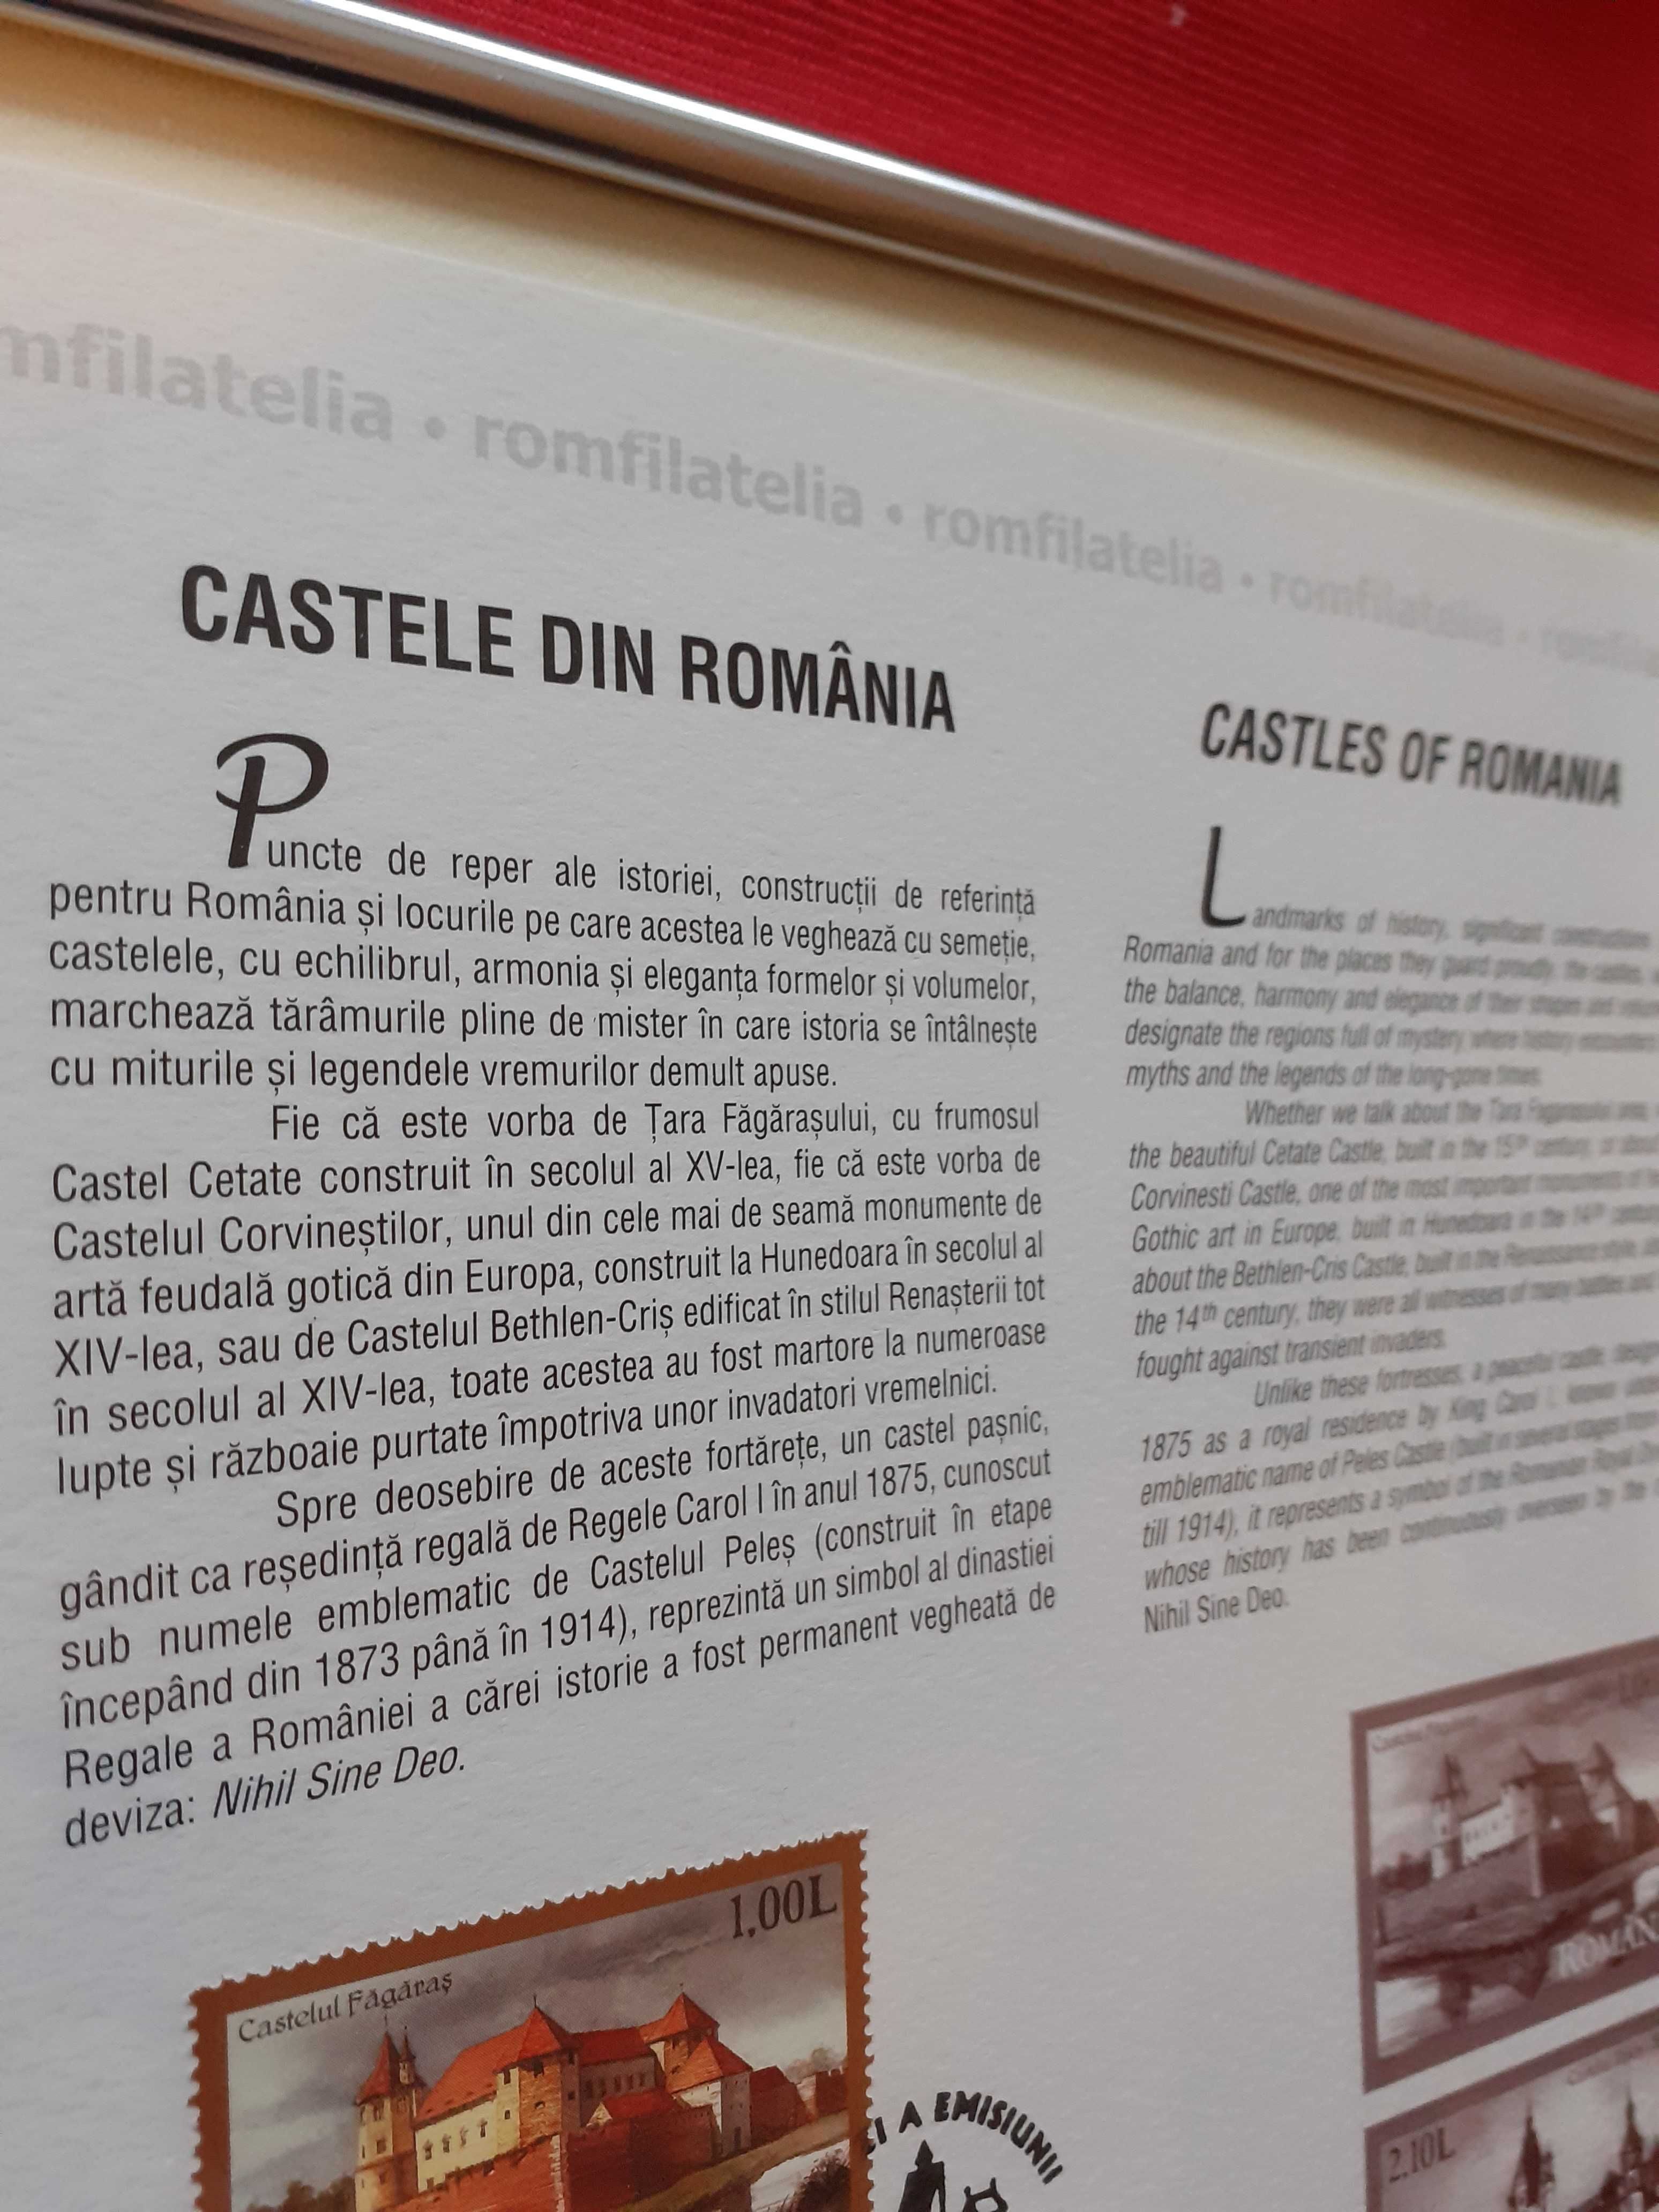 Document filatelic oficial "Castele din România" - piesă de colecție